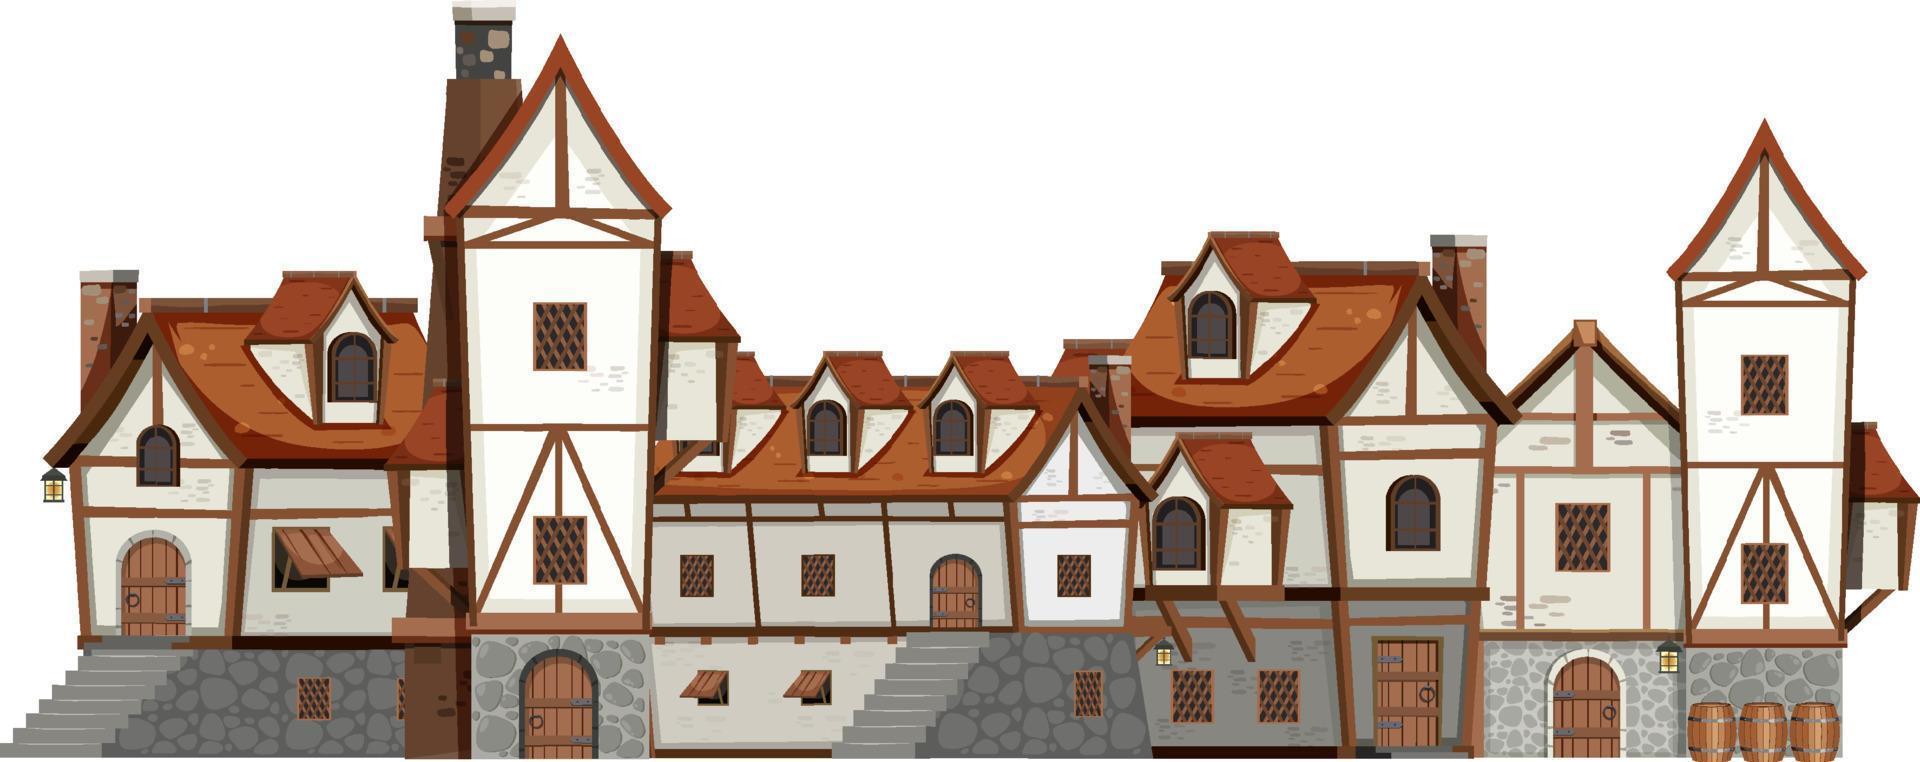 antico edificio medievale su sfondo bianco vettore